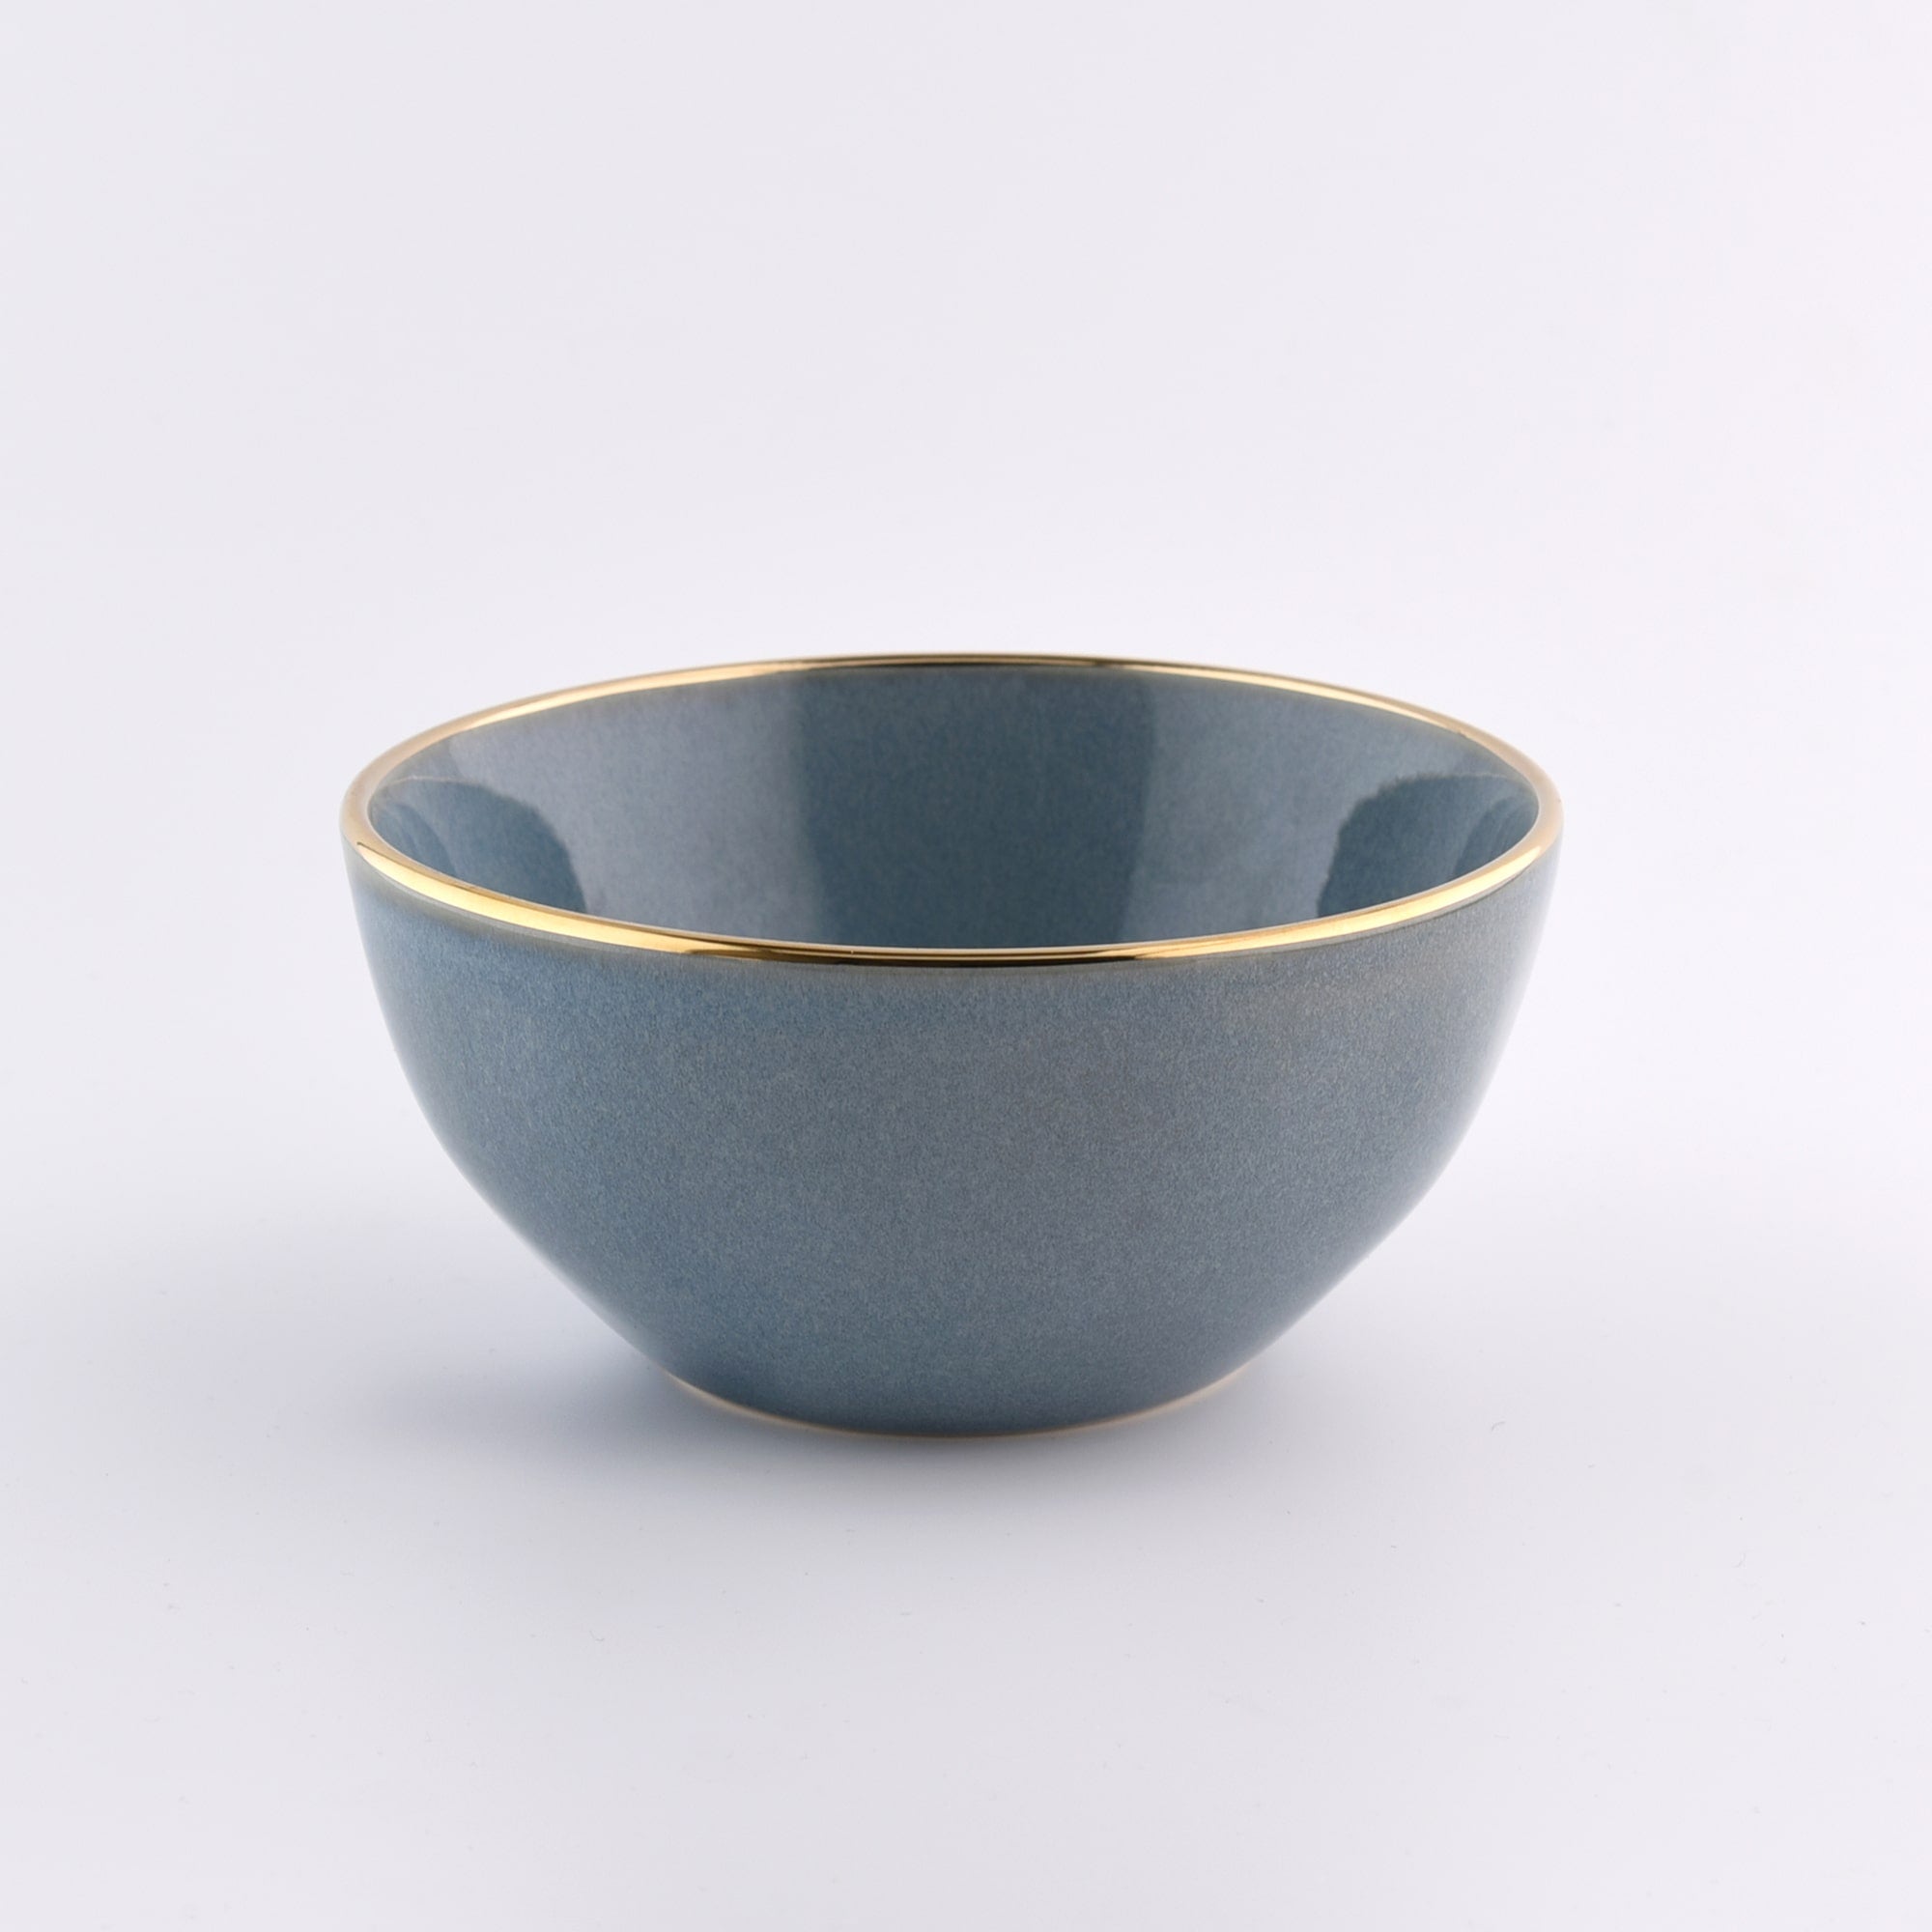 16-OZ Green Stoneware Bowl with Gold Rim - Set of Four